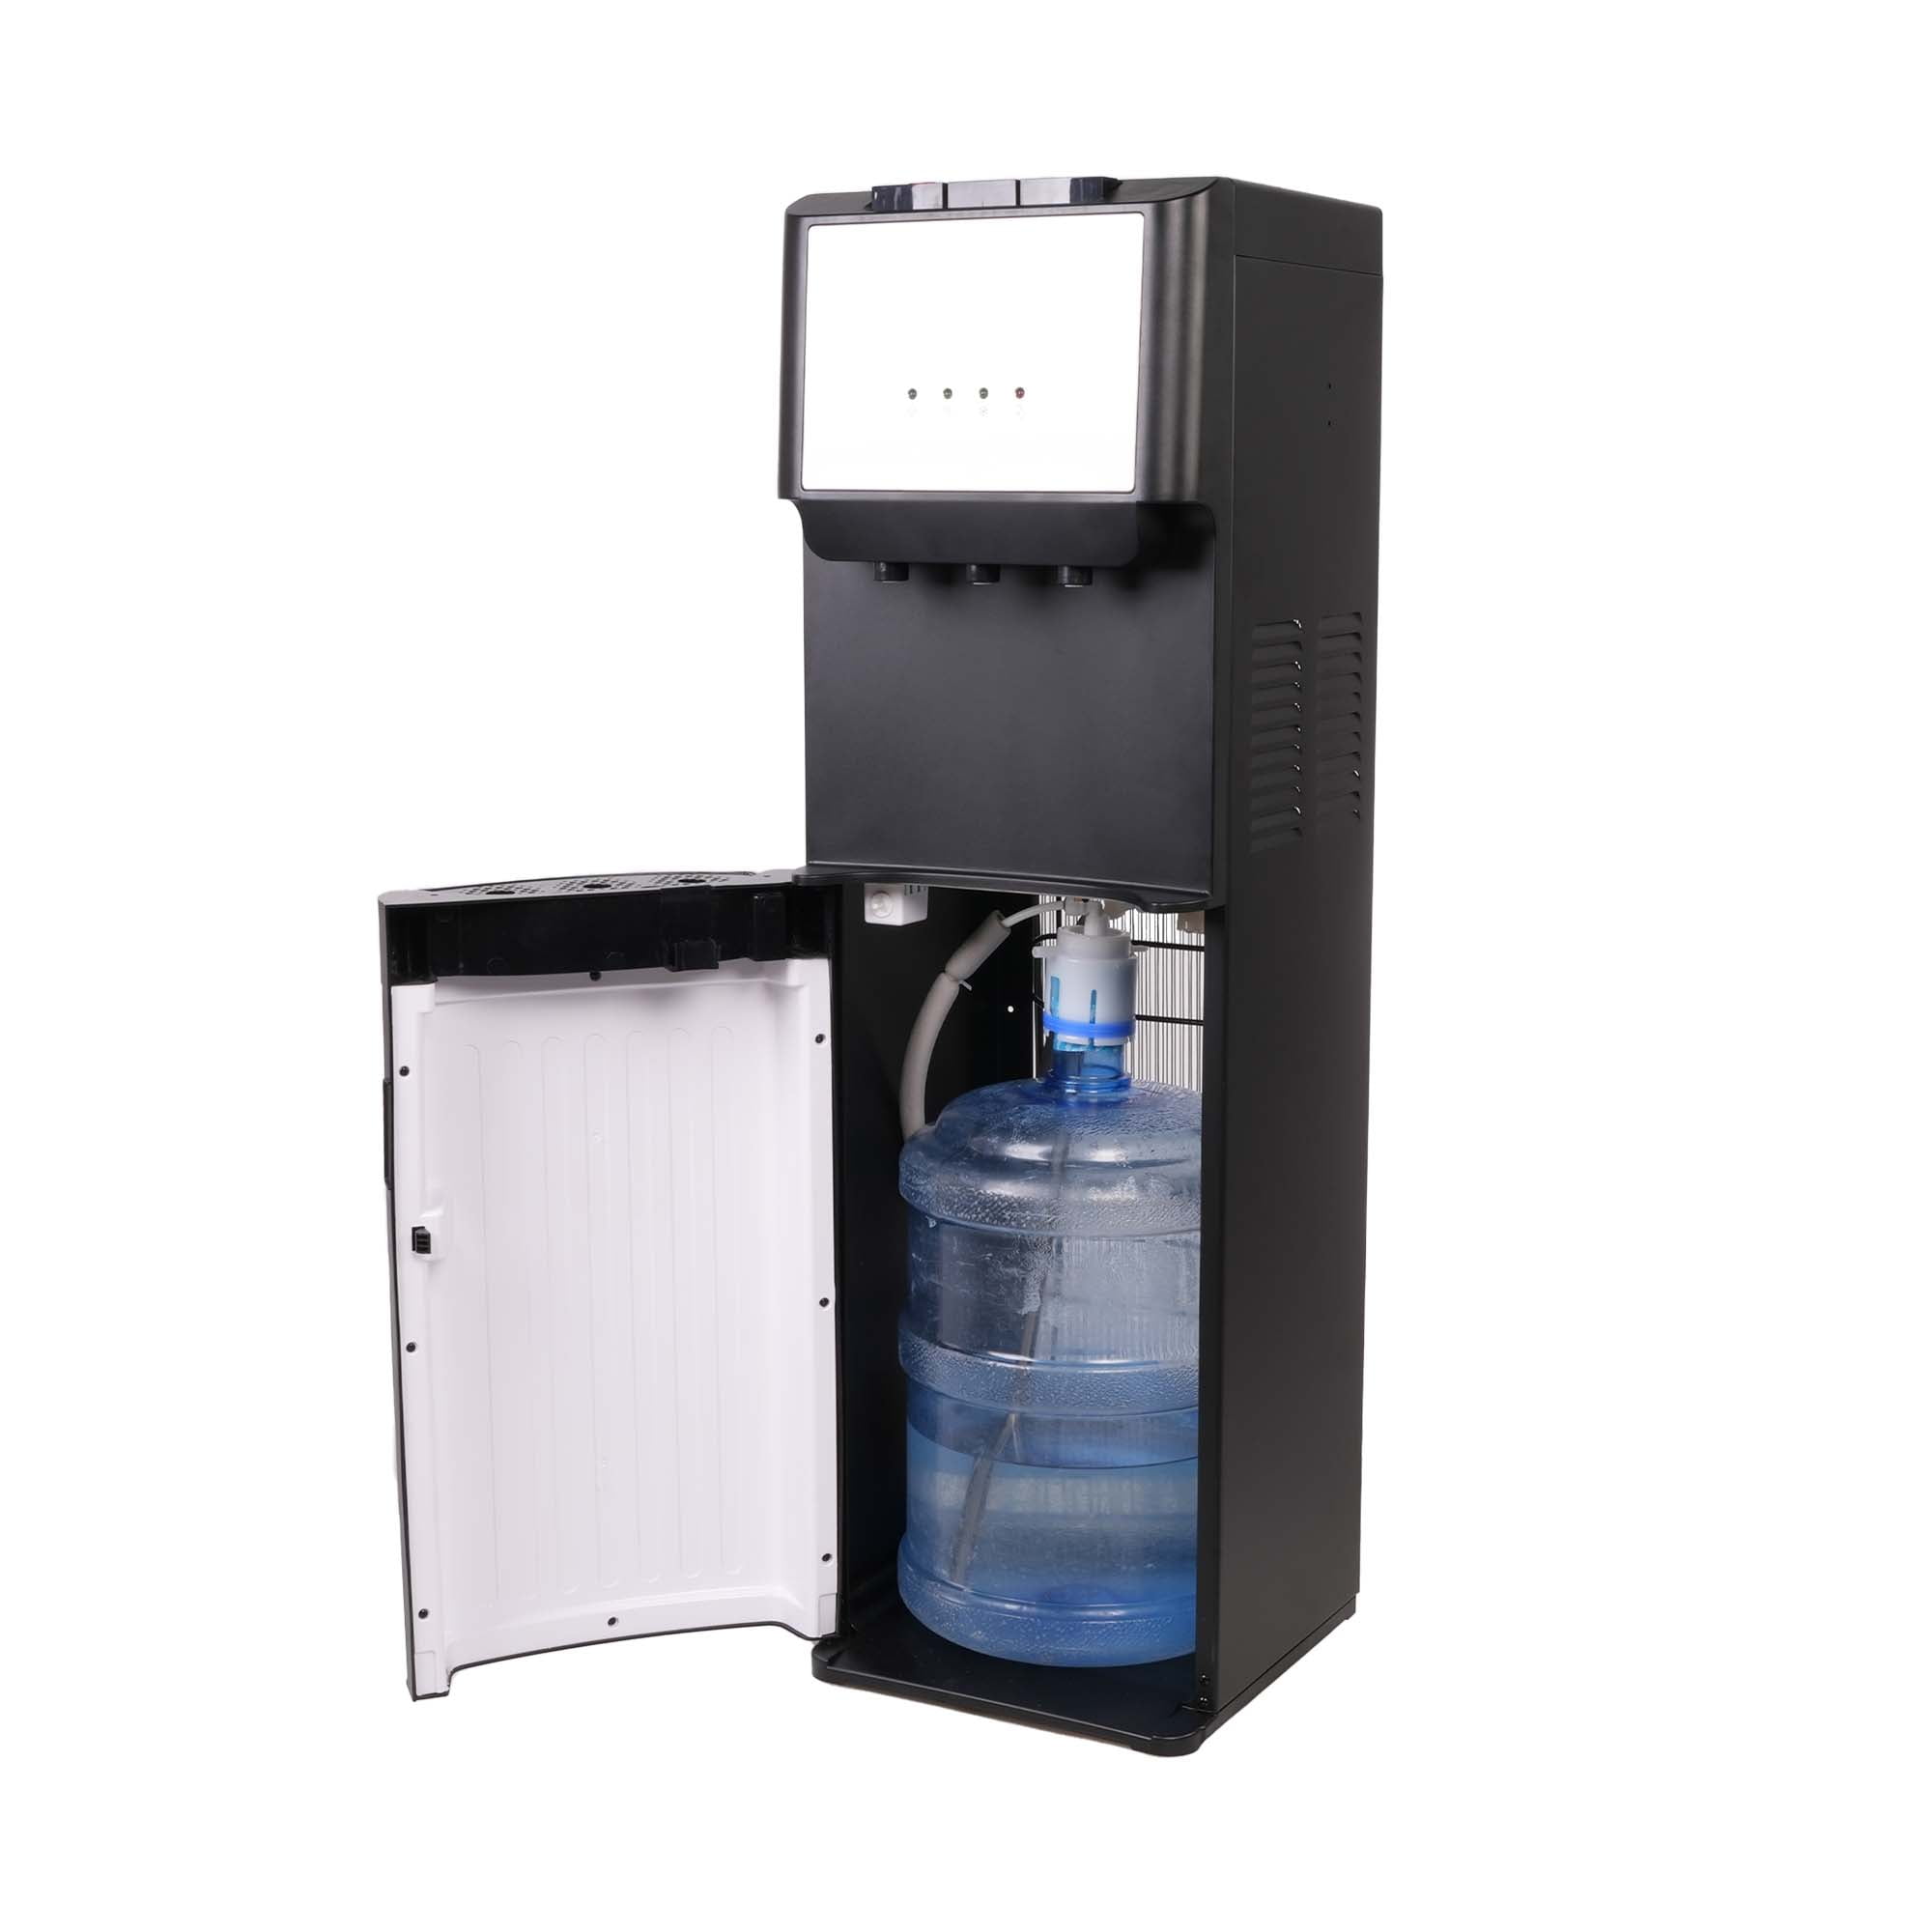 2.8L (0.8 Gallon) Fridge Glass Beverage Drink Dispenser Stainless